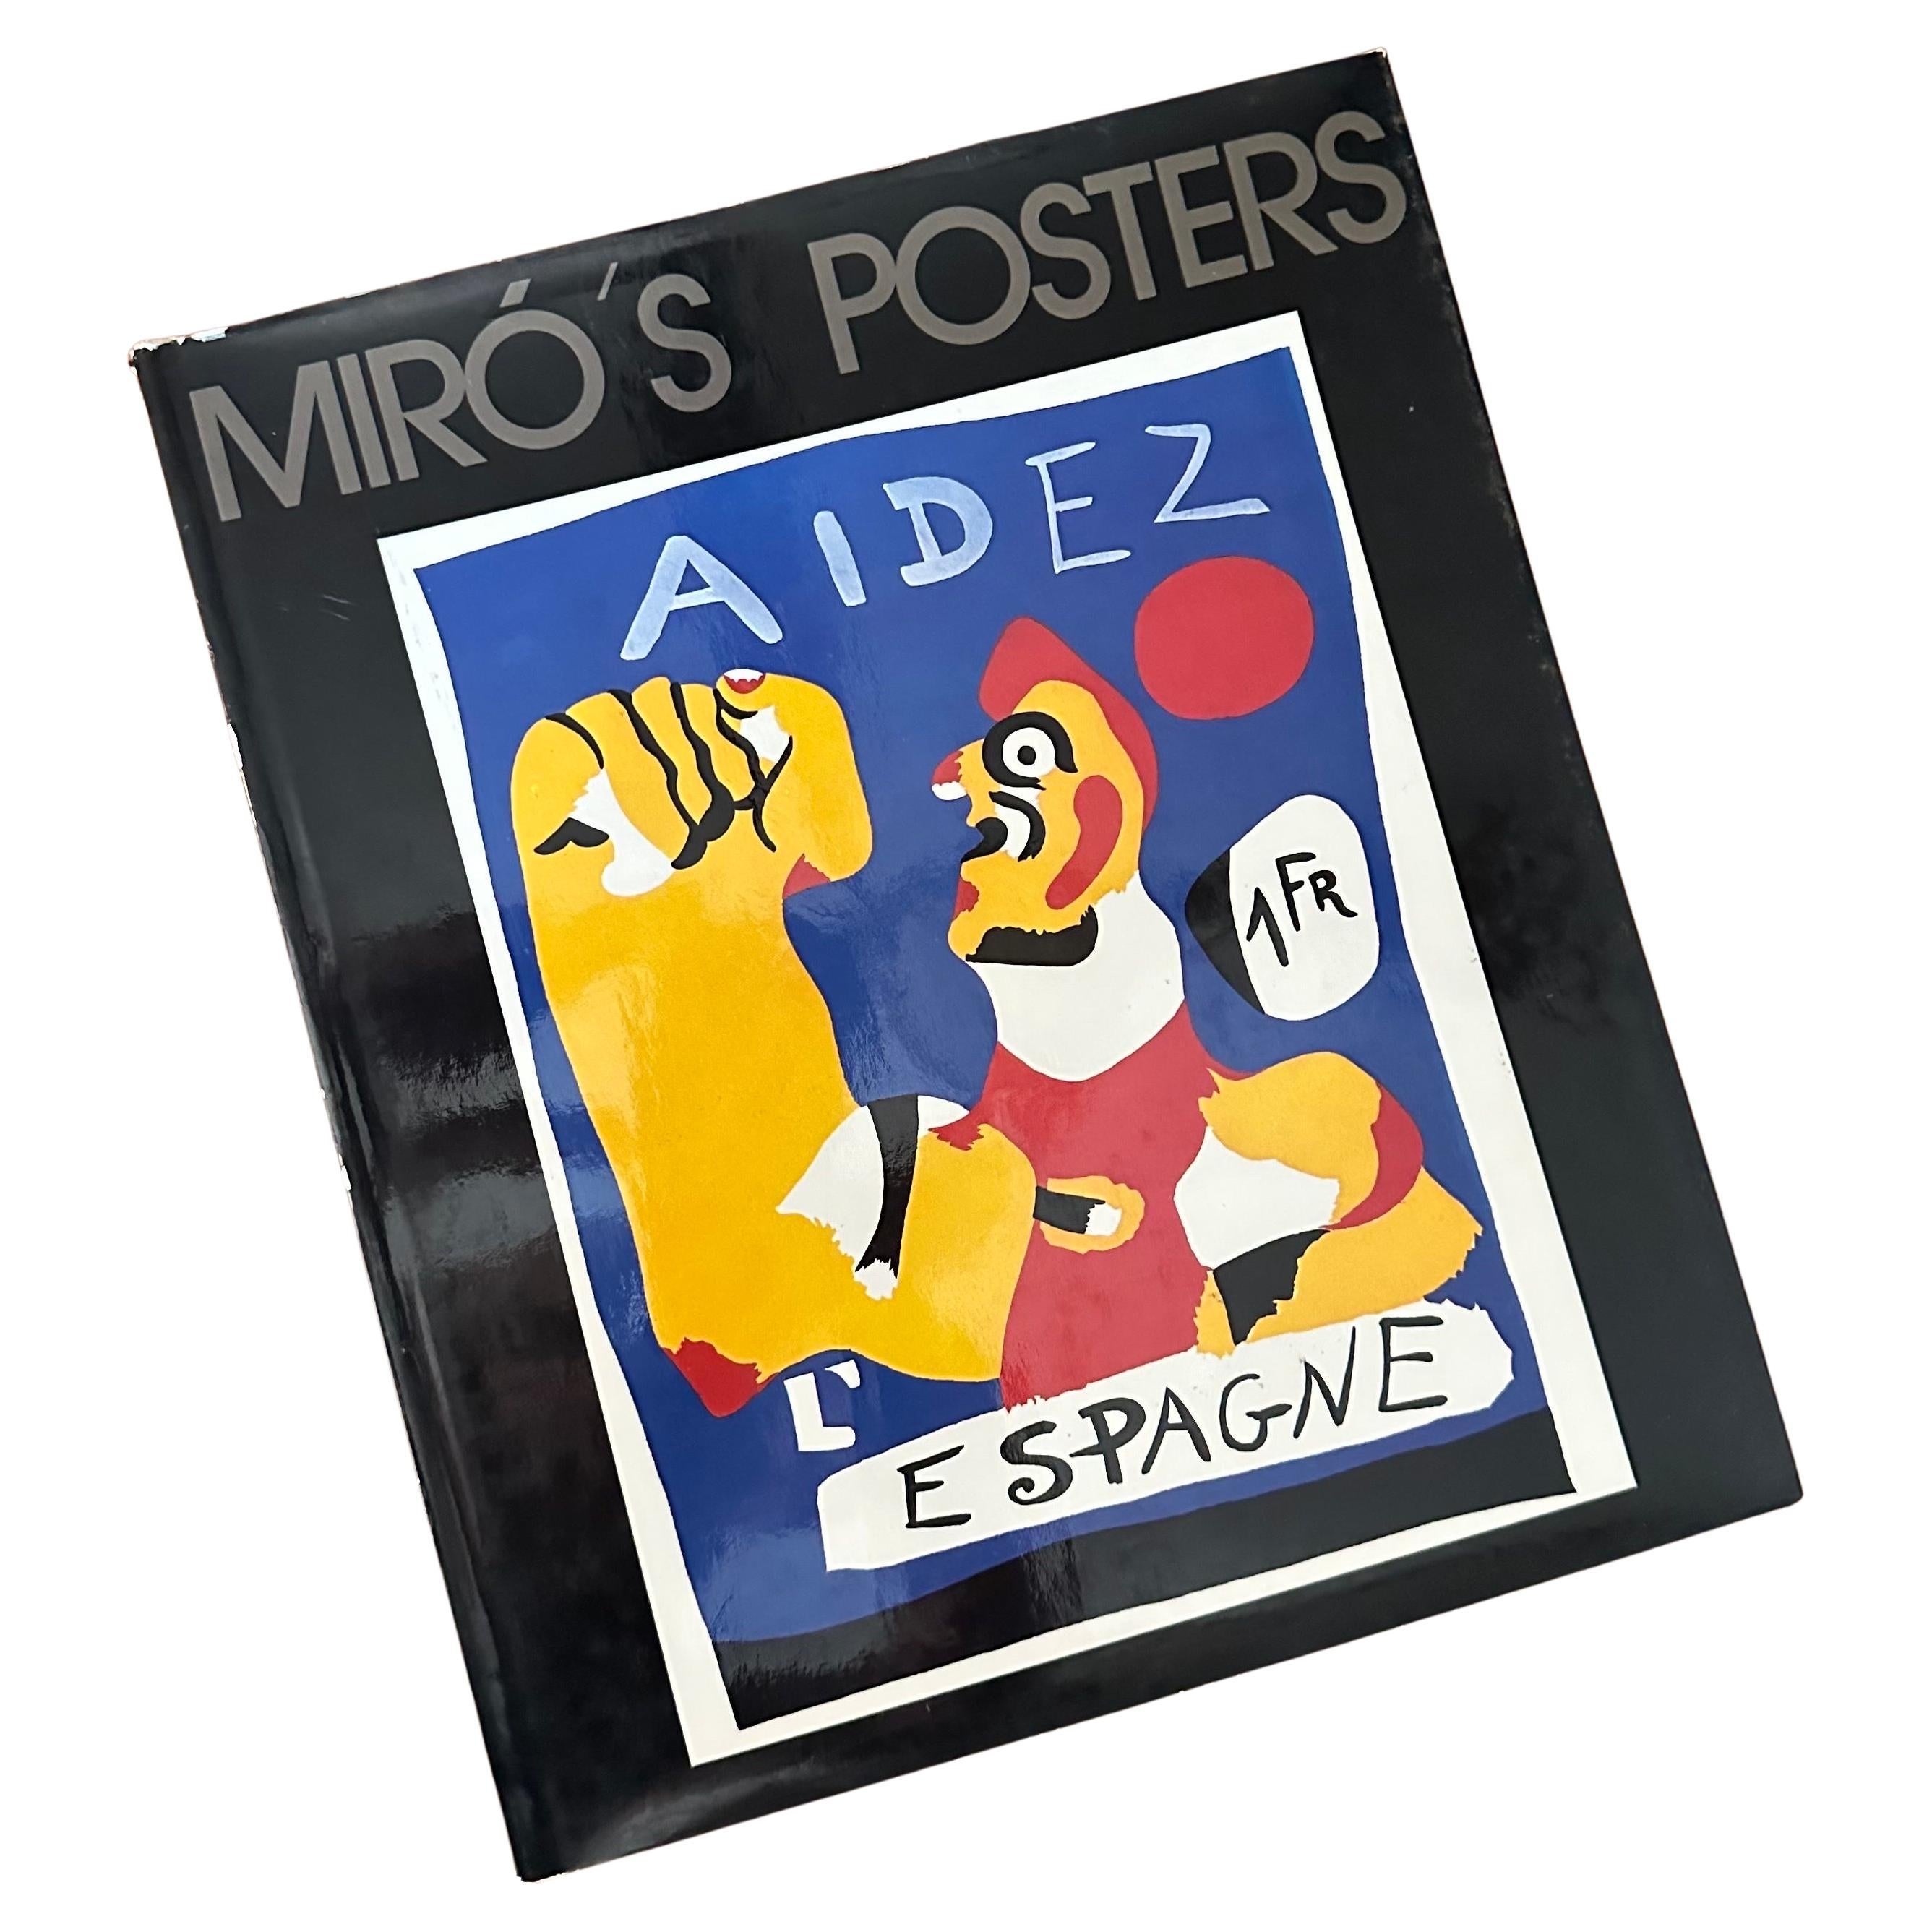 Livre d'art vintage Miro's Posters catalogué par Gloria Picazo